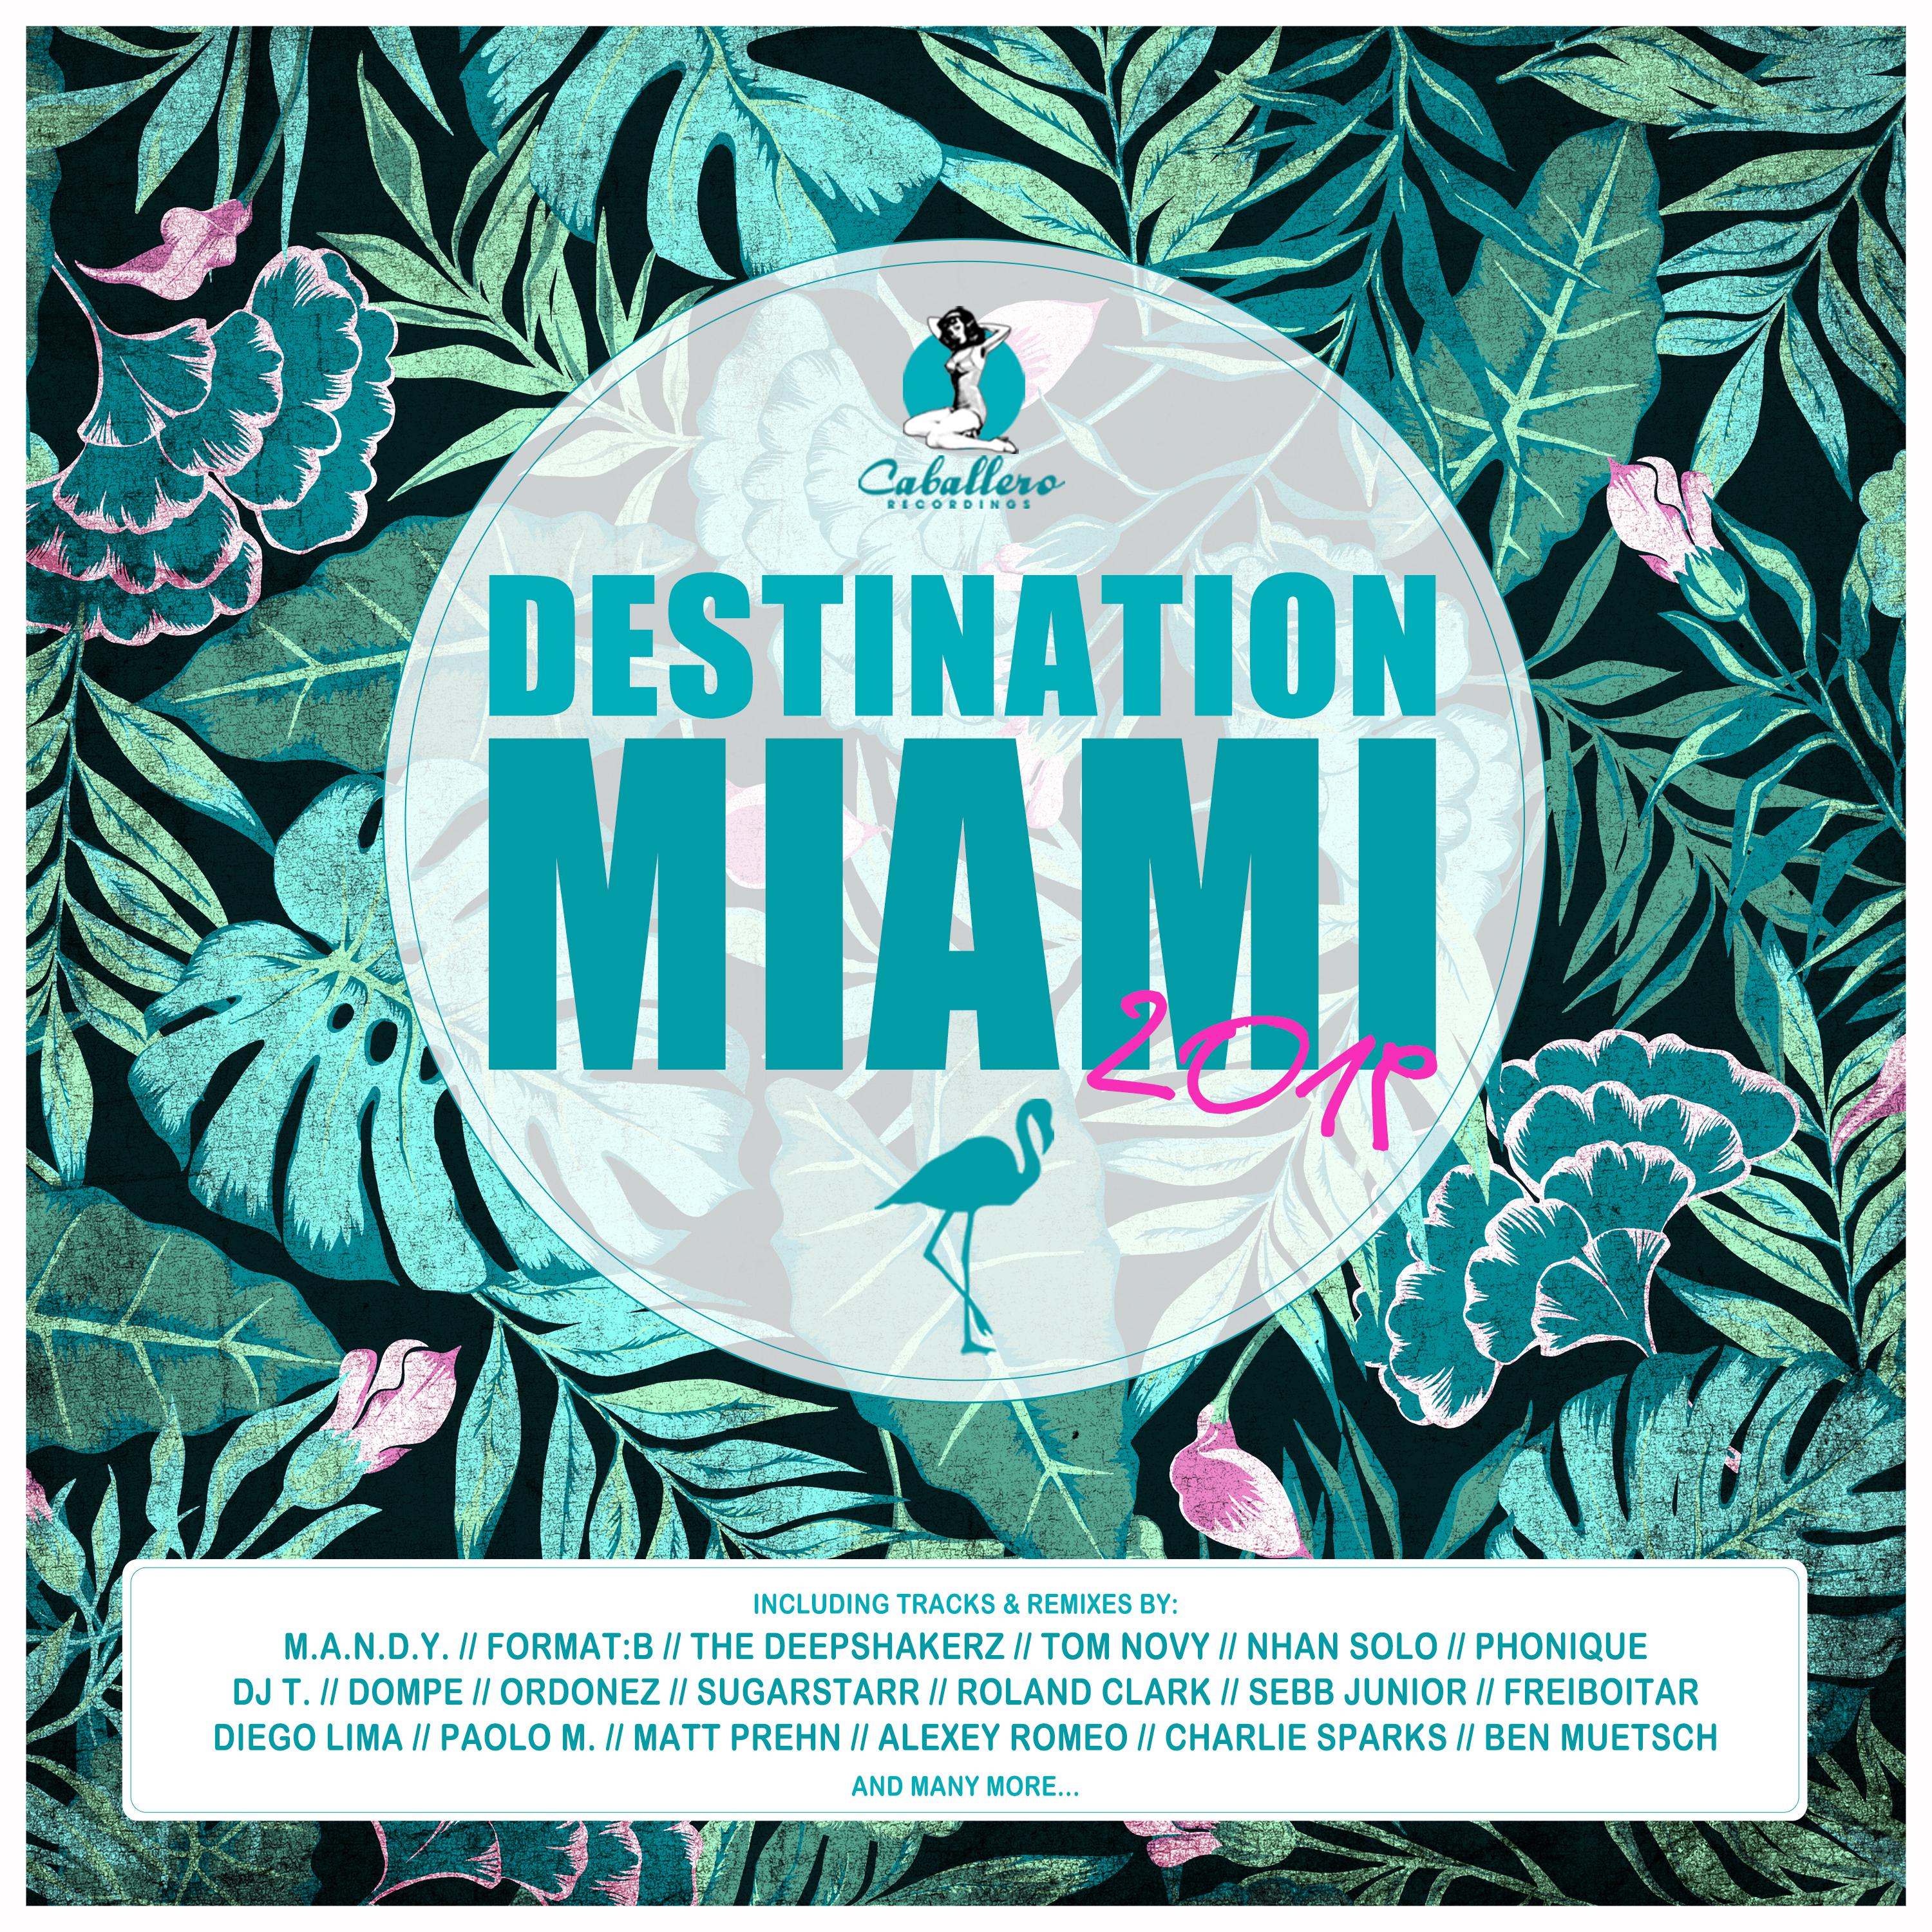 Destination: Miami 2019